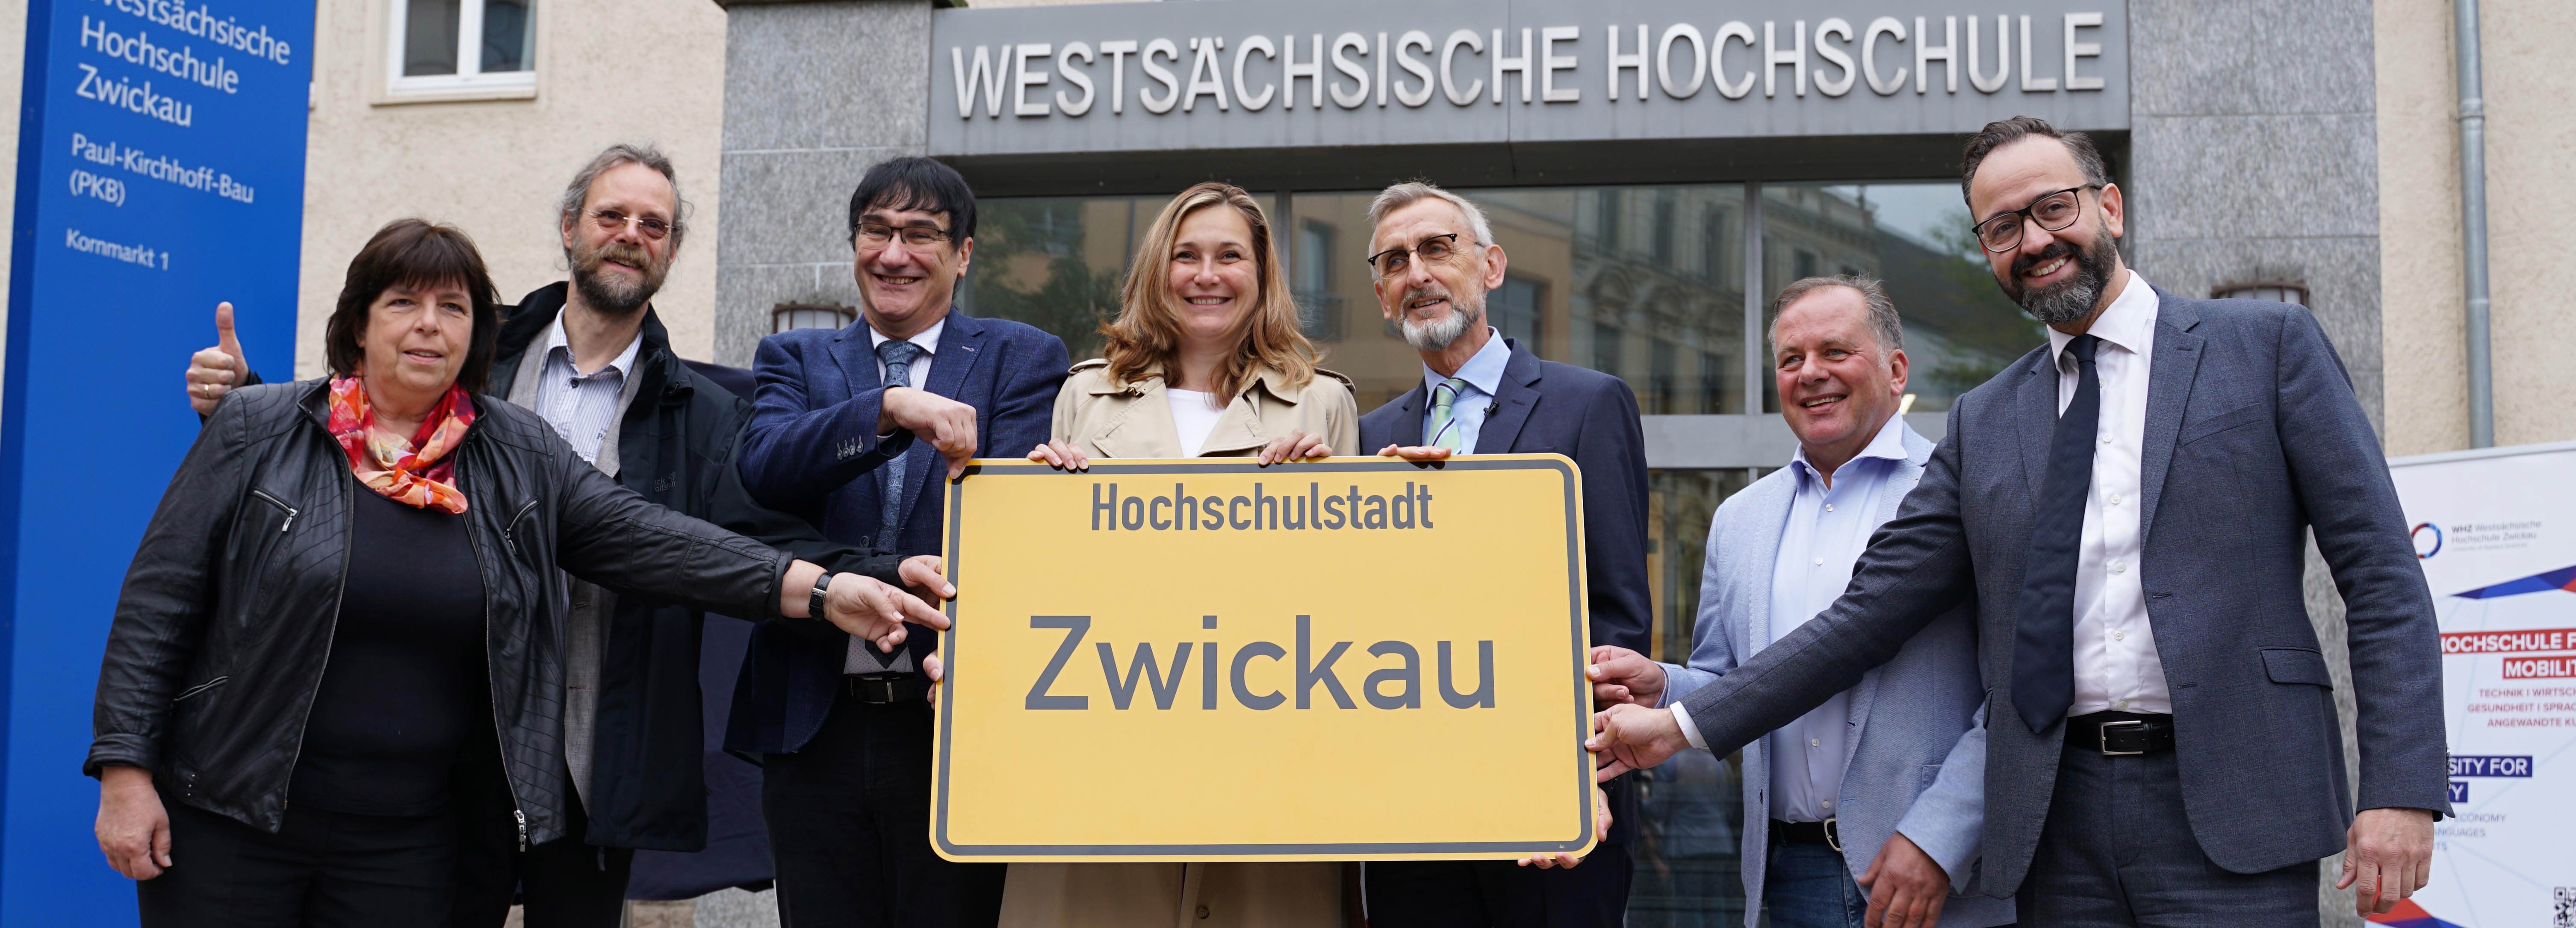 Foto: Übergabe des Bescheids für die Hochschulstadt Zwickau (Quelle: WHZ/S.Vogelsang) 